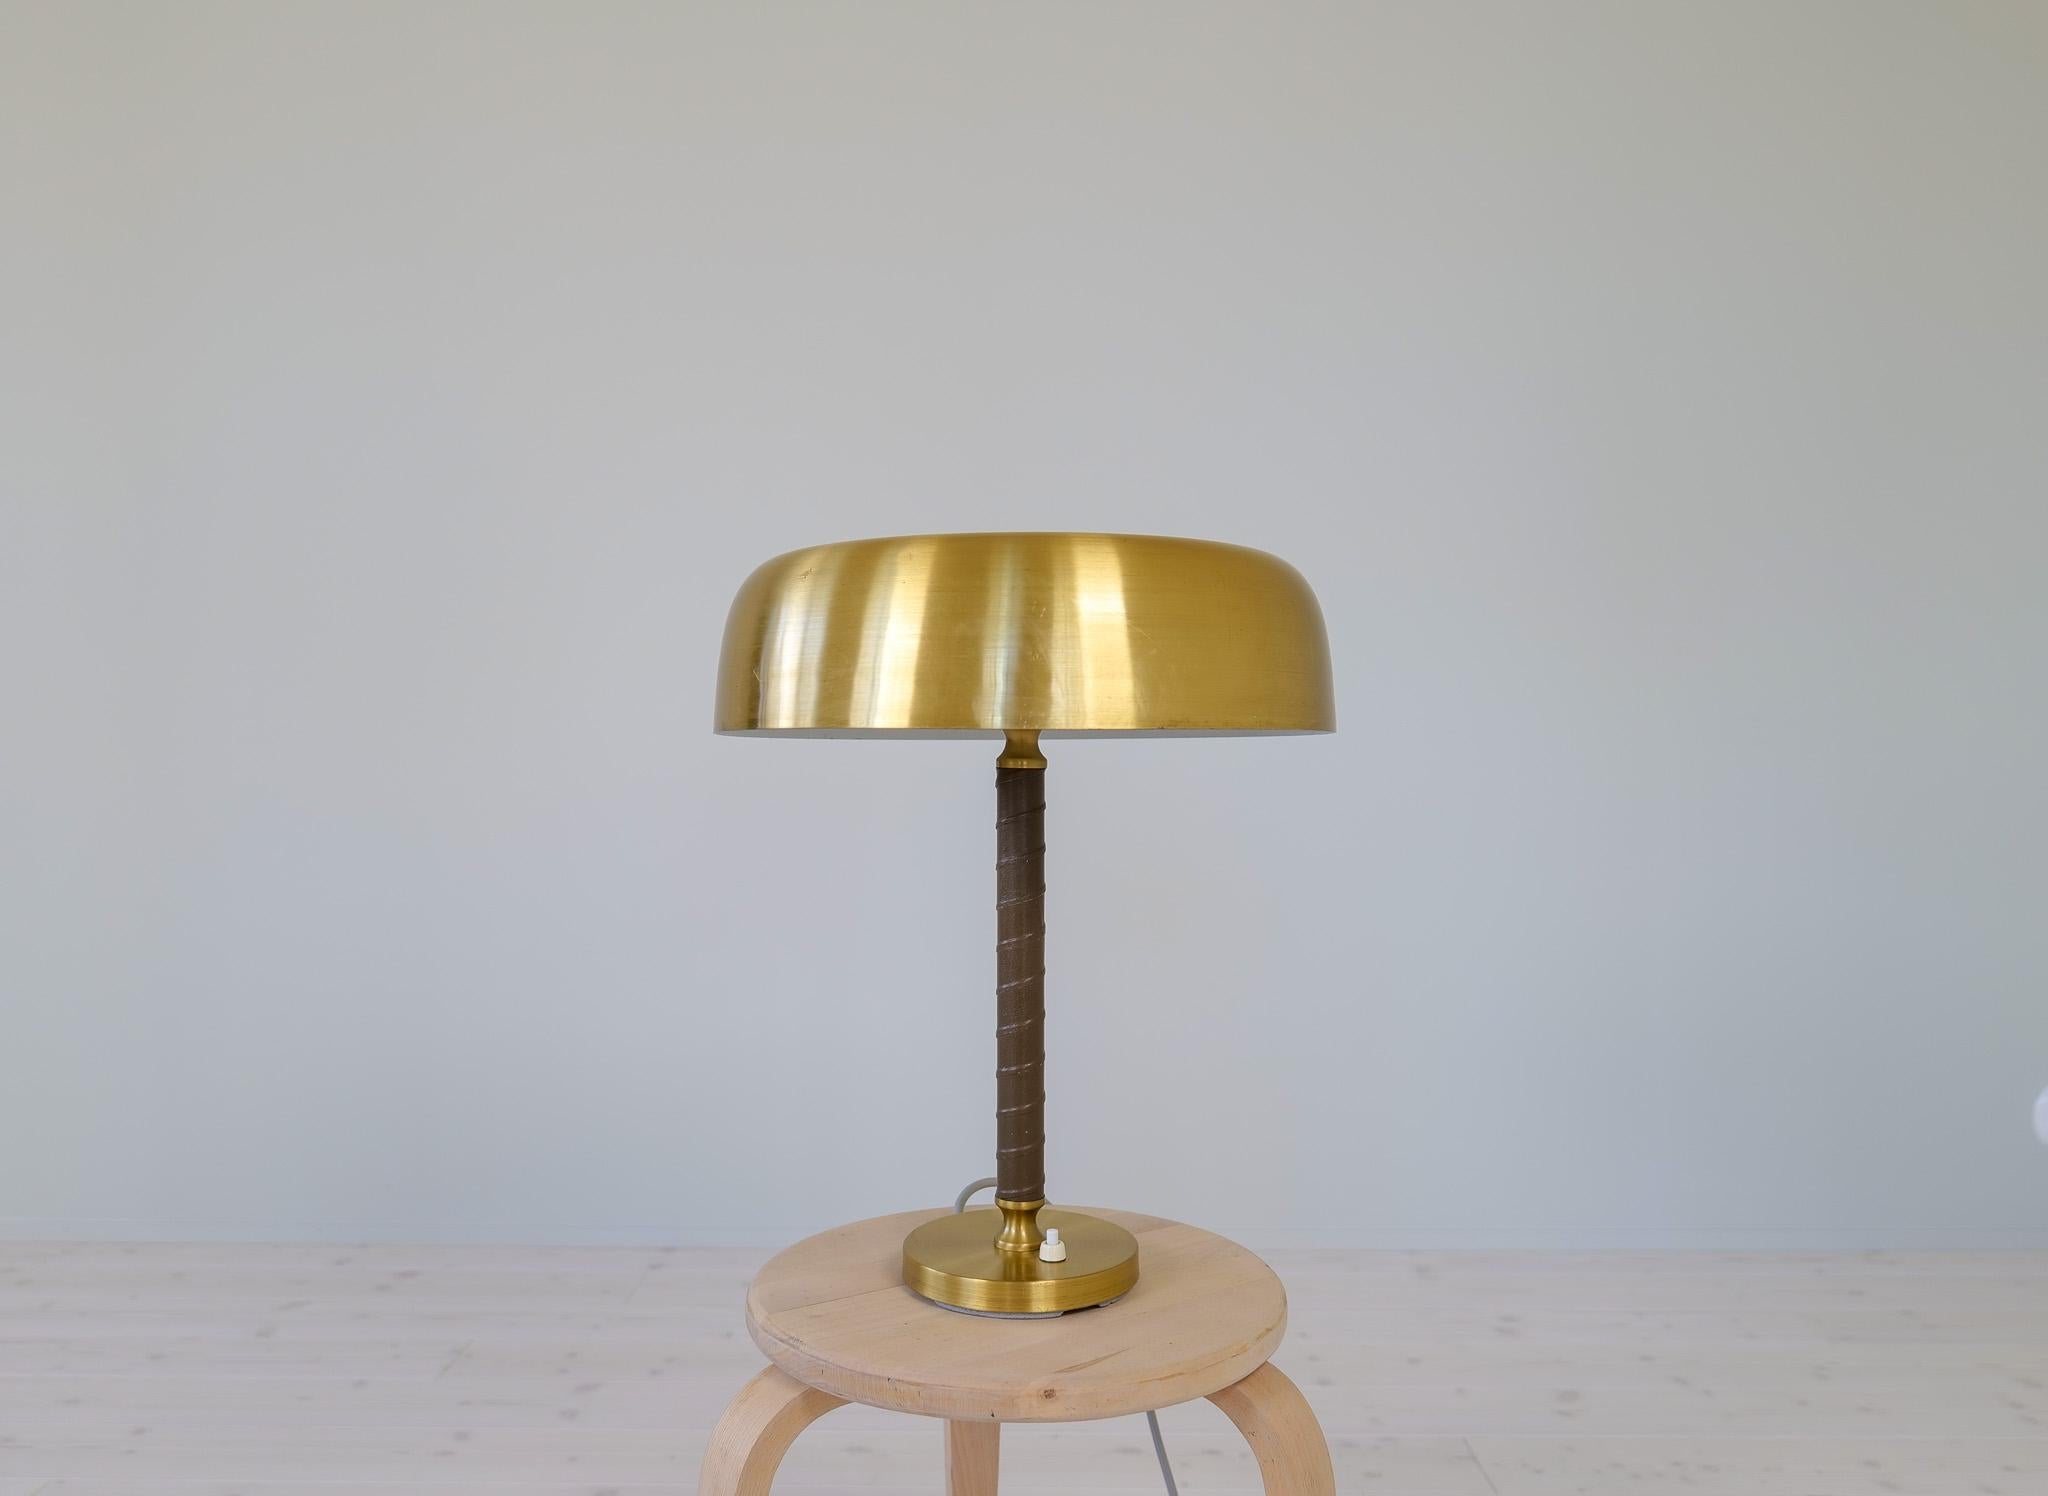 Magnifique lampe de table en laiton brossé et cuir par Boréns, Suède.
Cette lampe conviendra parfaitement comme lampe de bureau ou sera un excellent complément pour donner une bonne impression et une lumière confortable à n'importe quel endroit.